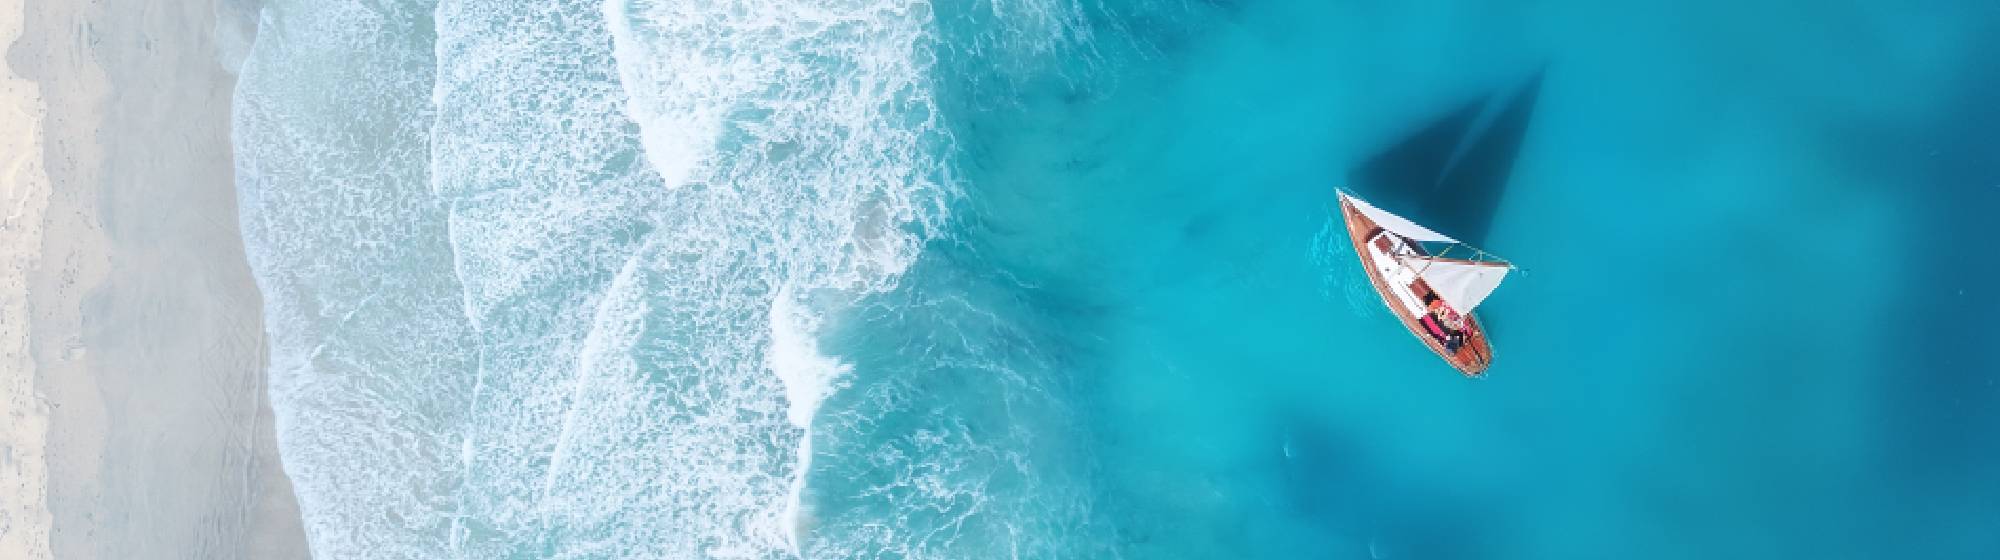 Un bateau naviguant sur une mer bleu turquoise proche d'une plage de sable fin. 